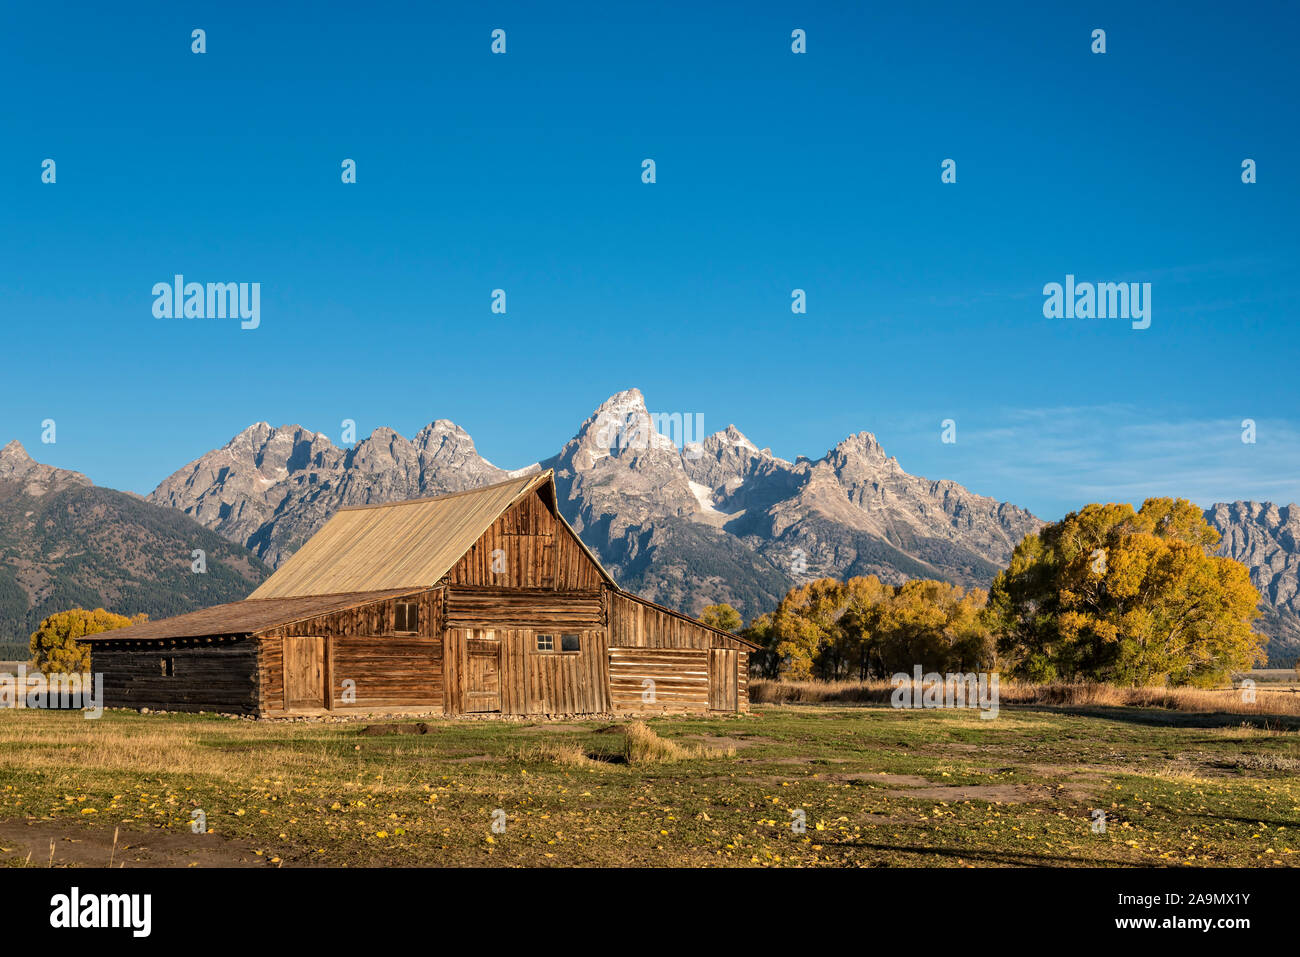 T. A. Moutlon Barn on Mormon Row, Grand Teton National Park, Wyoming. Stock Photo